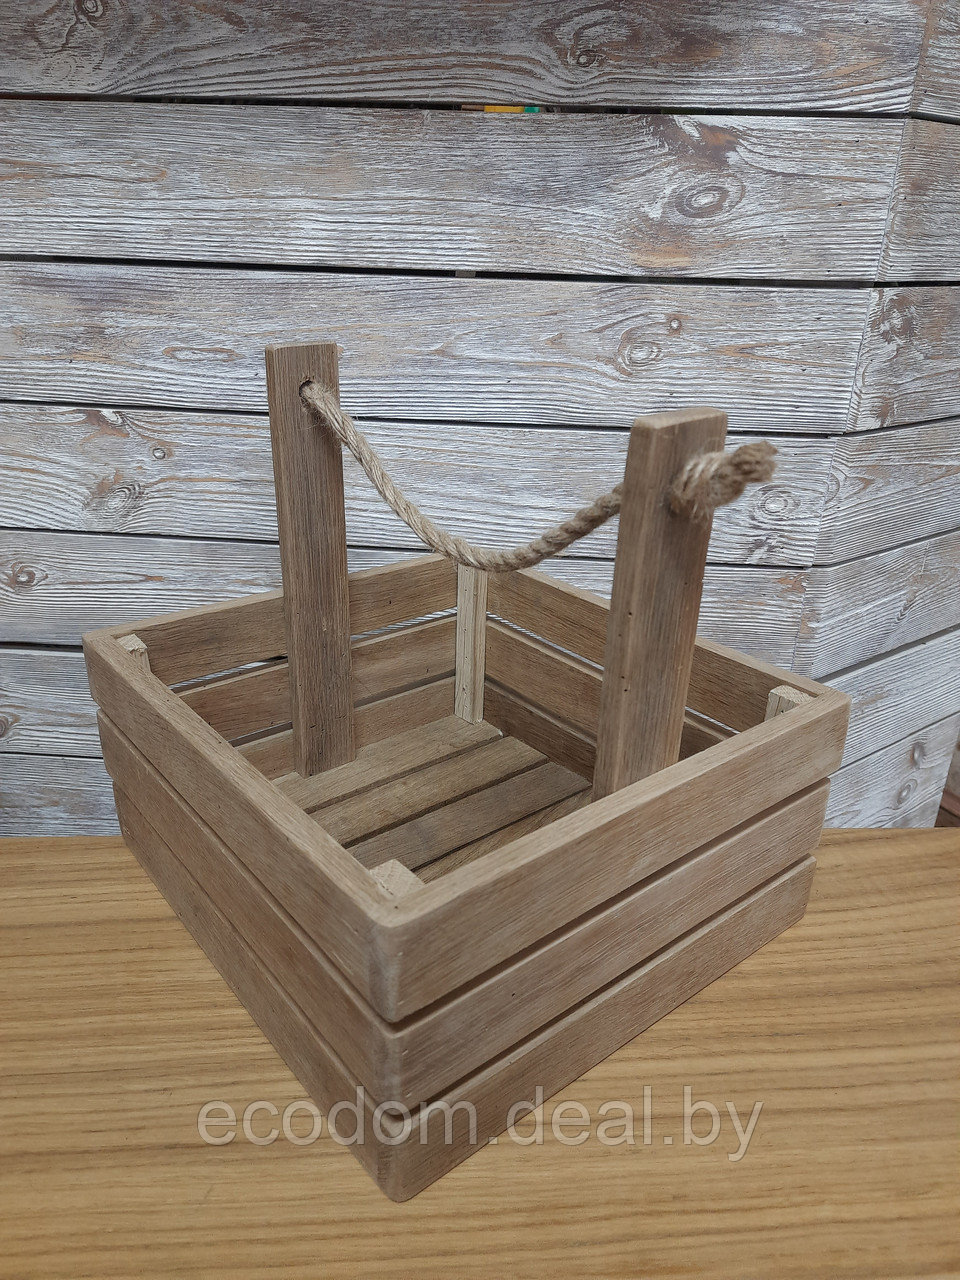 Ящик деревянный, дуб+канат